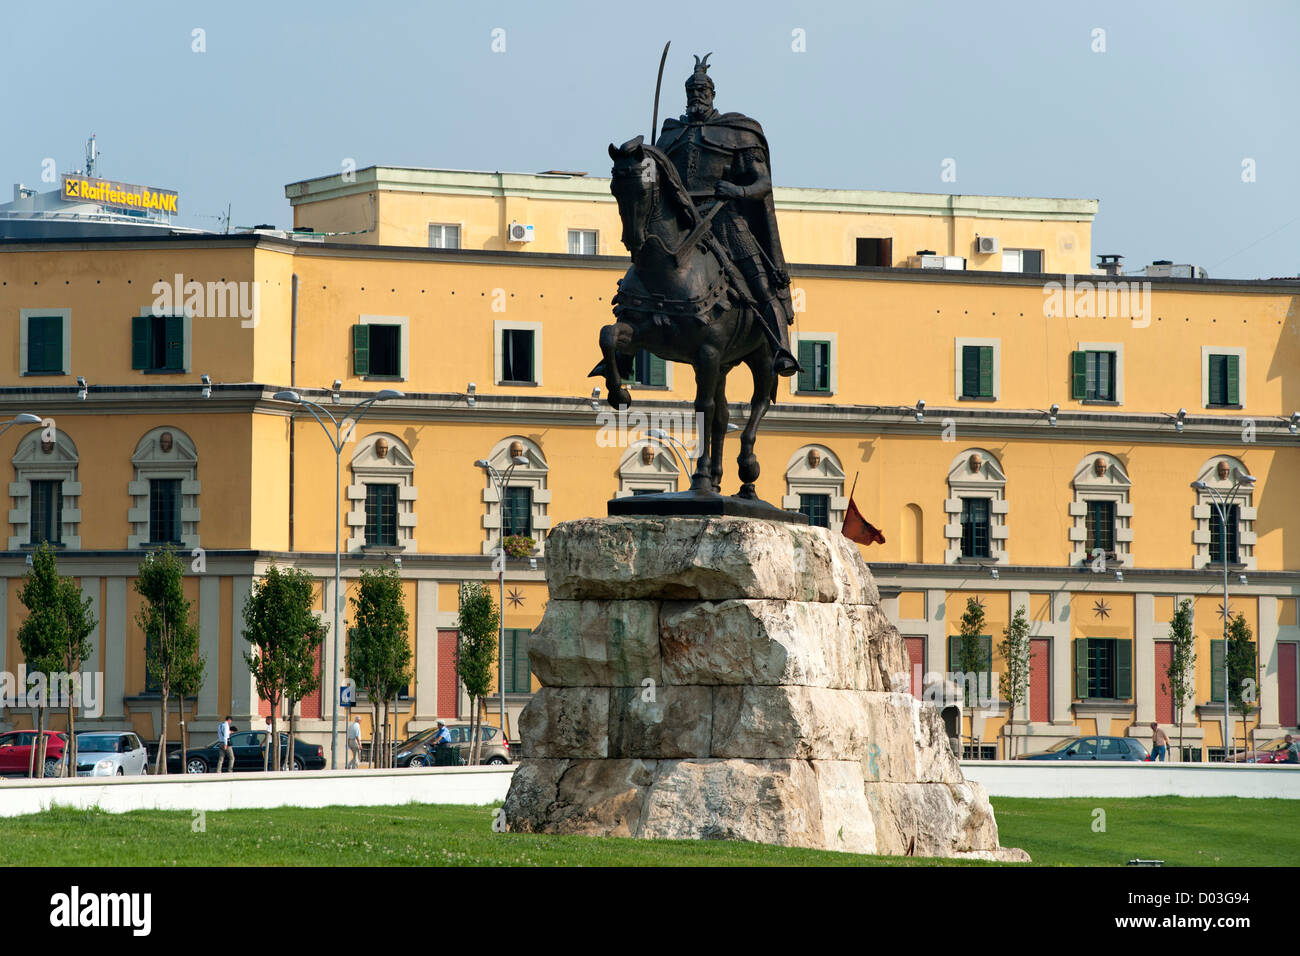 Le monument à la place Skanderbeg Skanderbeg à Tirana, la capitale de l'Albanie. Banque D'Images